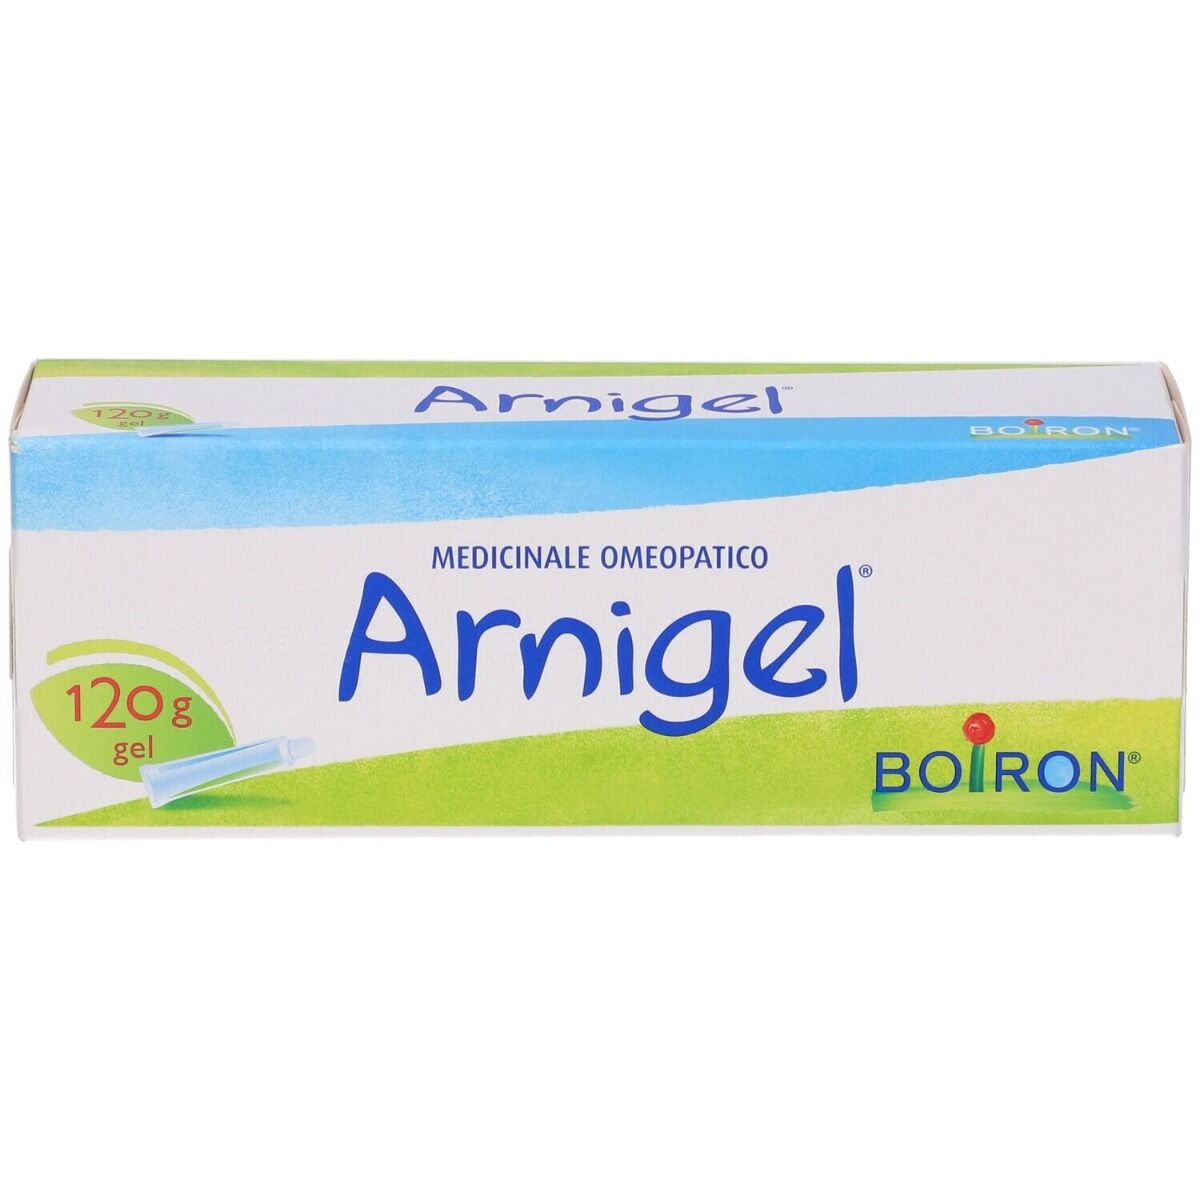 BOIRON Arnigel Gel 7% Rimedio Omeopatico Tubo 120 g